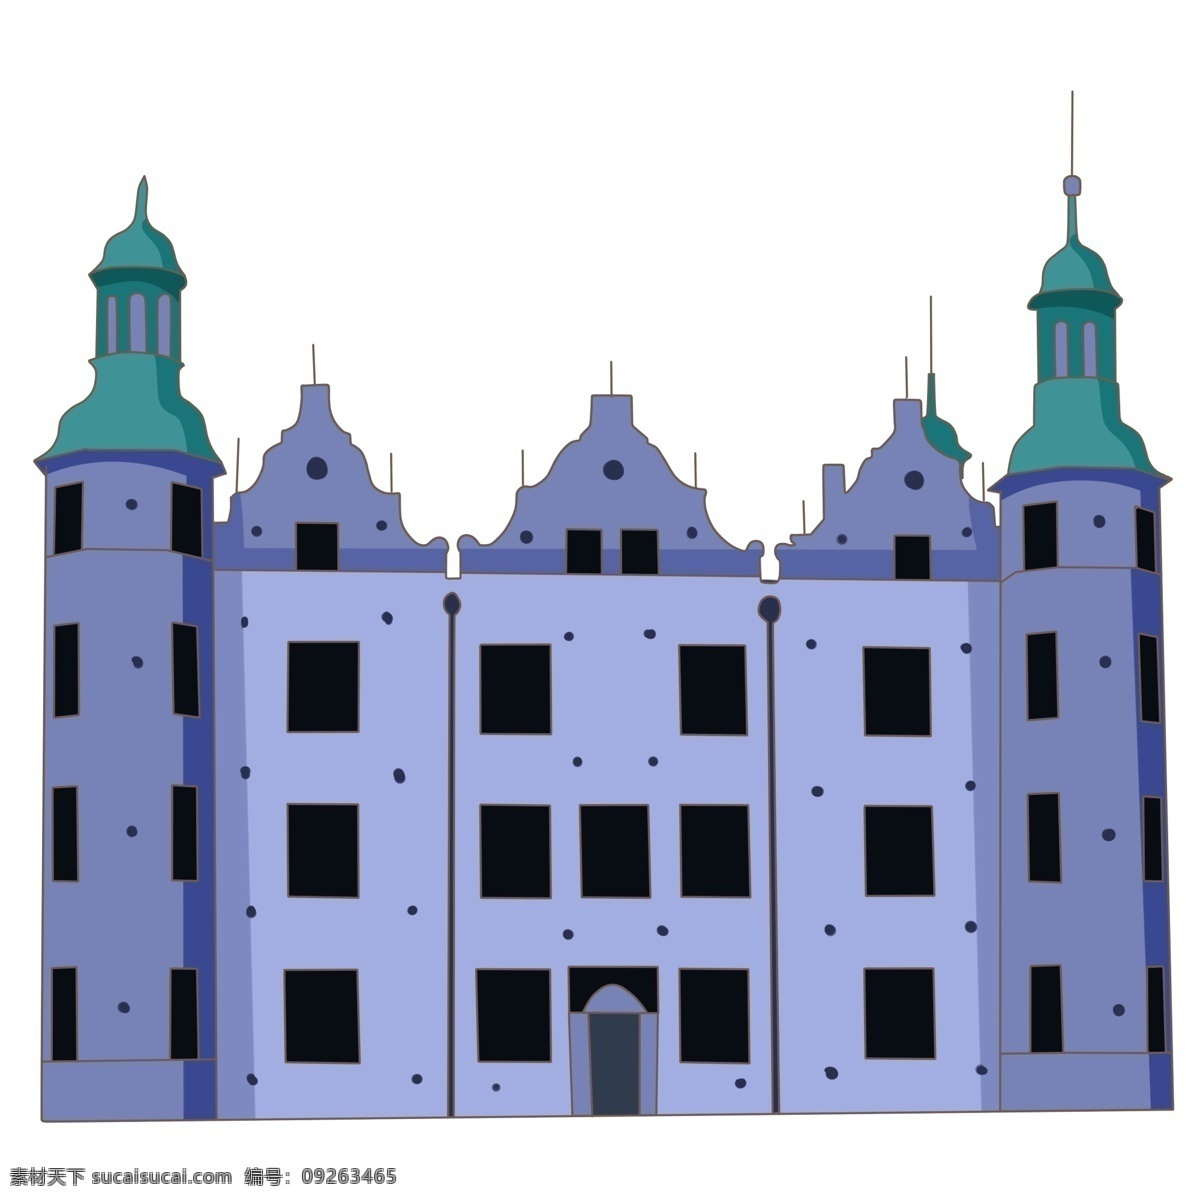 城堡 堡垒 高楼 建筑 高楼建筑城堡 风景名胜 城堡堡垒 城堡建筑 城市度假城堡 建筑物 插画